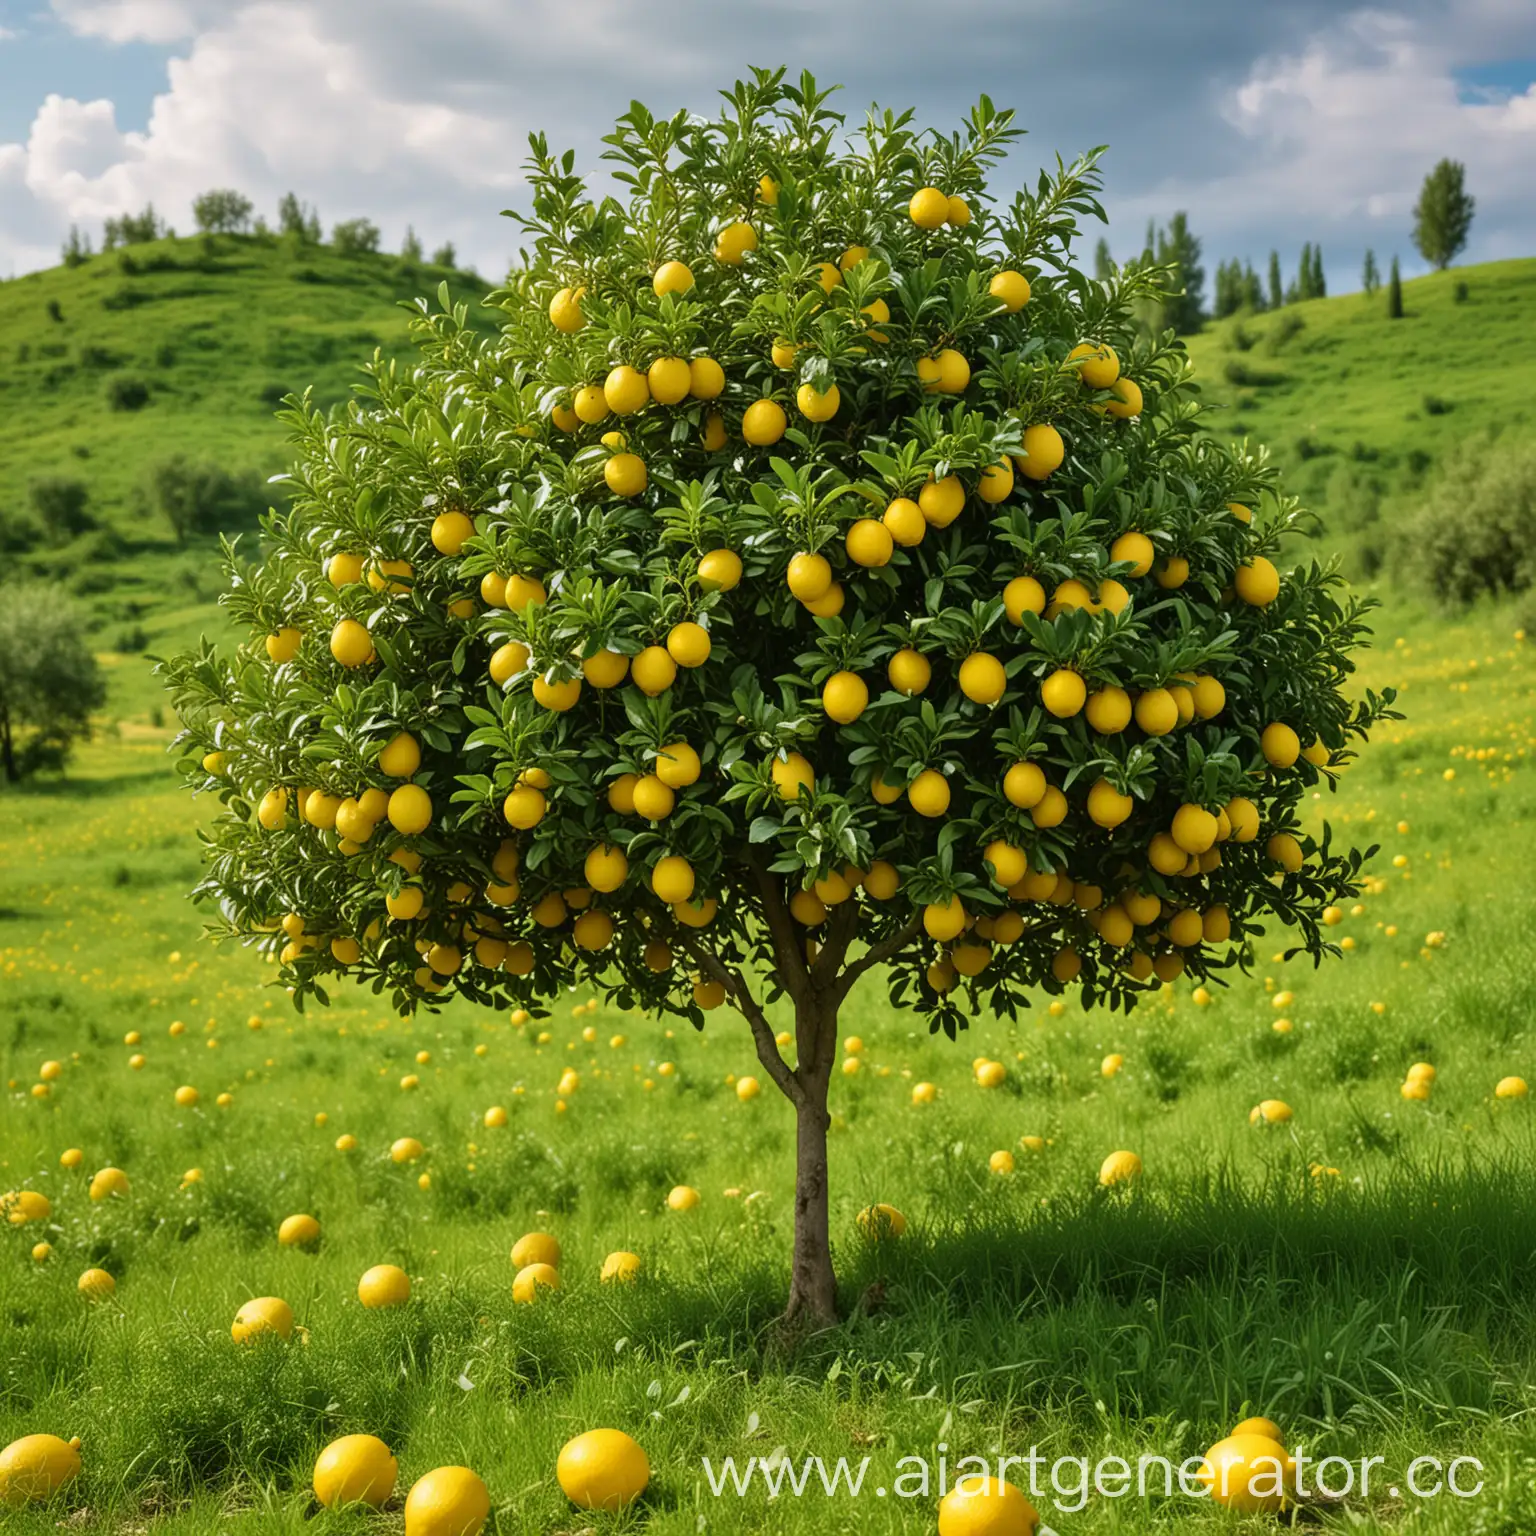 лимонное дерево стоит на холме по среди поля из ярко-зелёной травы у дерева пышная крона на которой растут яркие лимоны